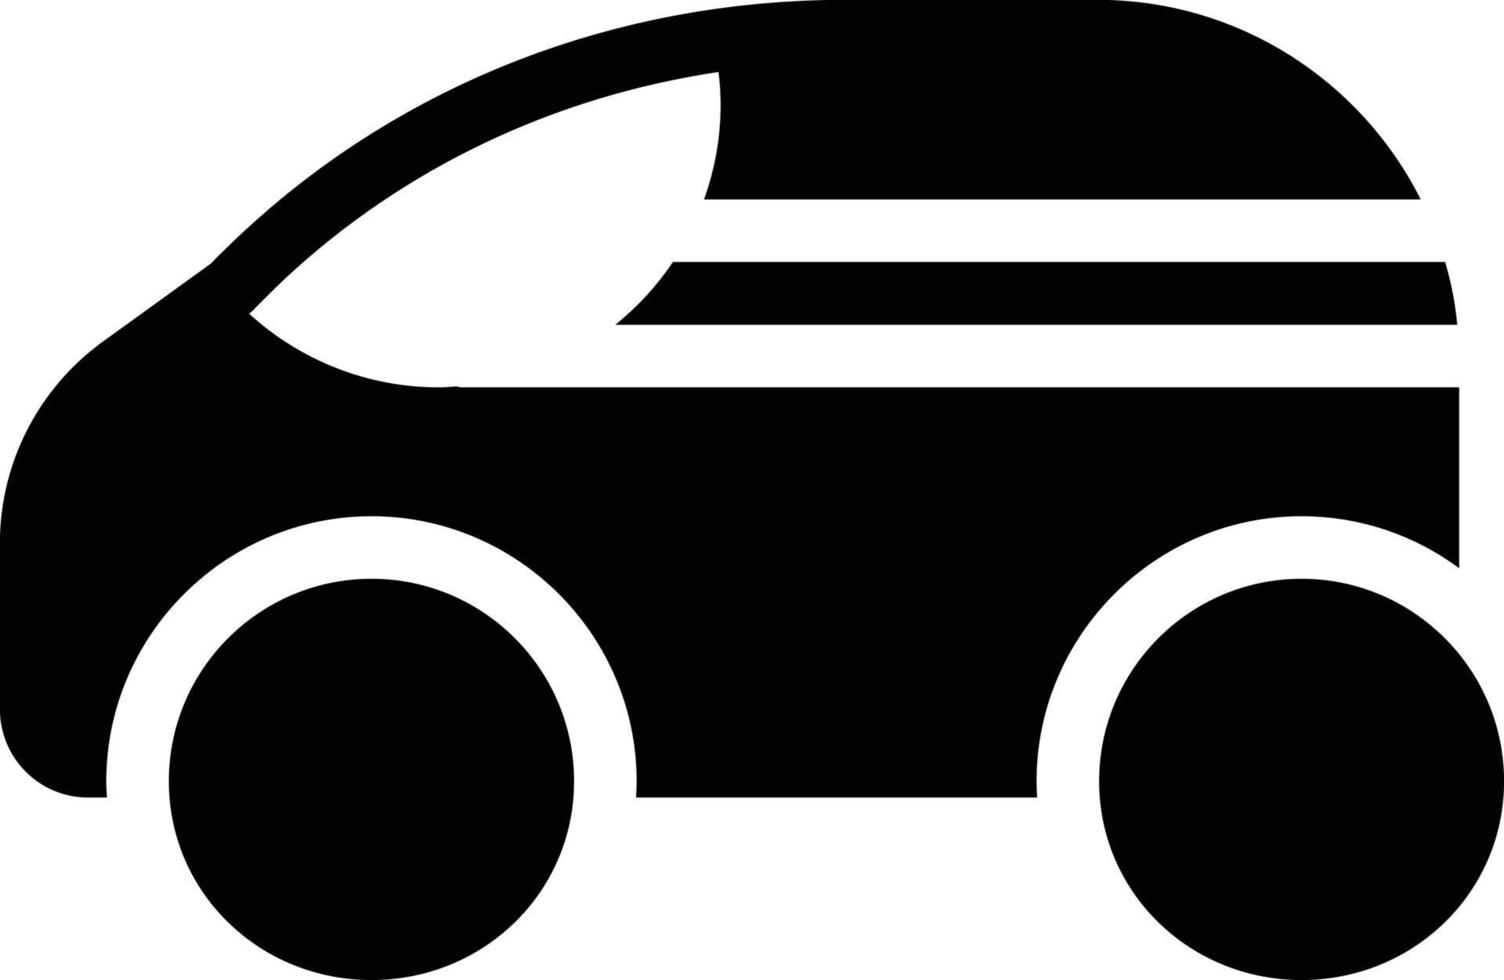 illustrazione vettoriale dell'auto su uno sfondo simboli di qualità premium. icone vettoriali per il concetto e la progettazione grafica.